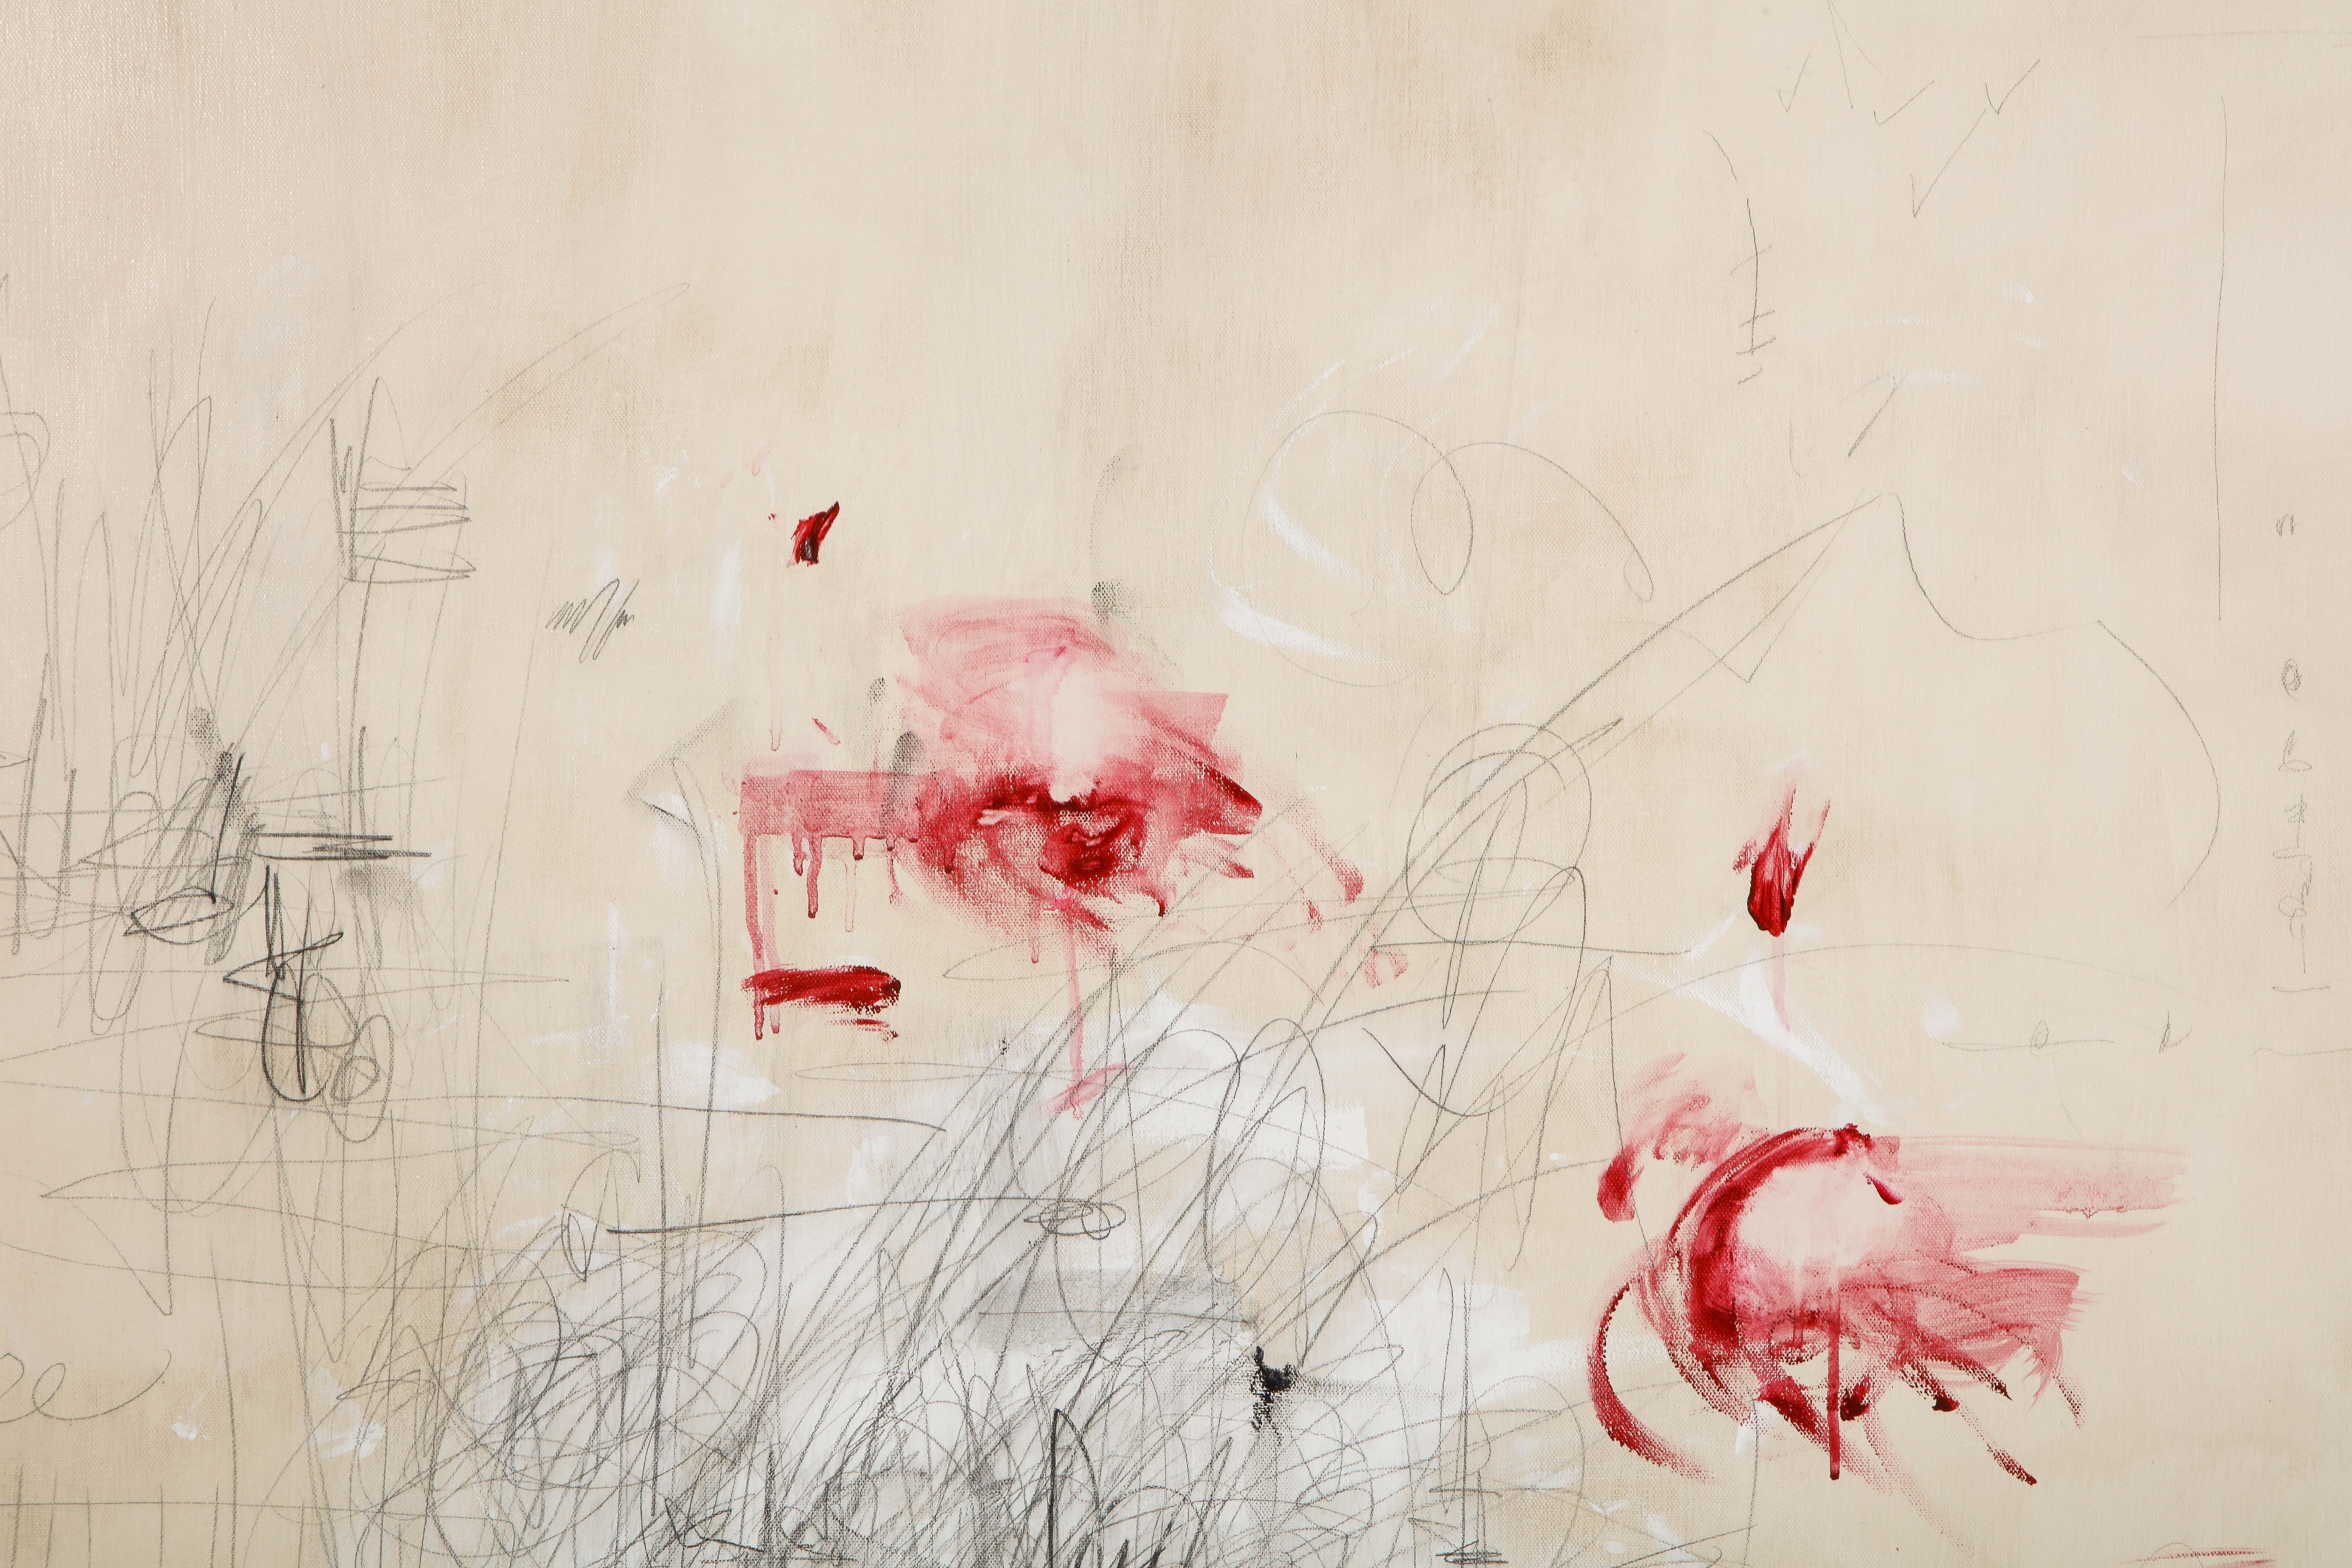 Großes Gemälde „Amore“ in Elfenbein-:: Weiß-:: Schwarz- und Rottönen:: 2::44 m x 3::66 m 1